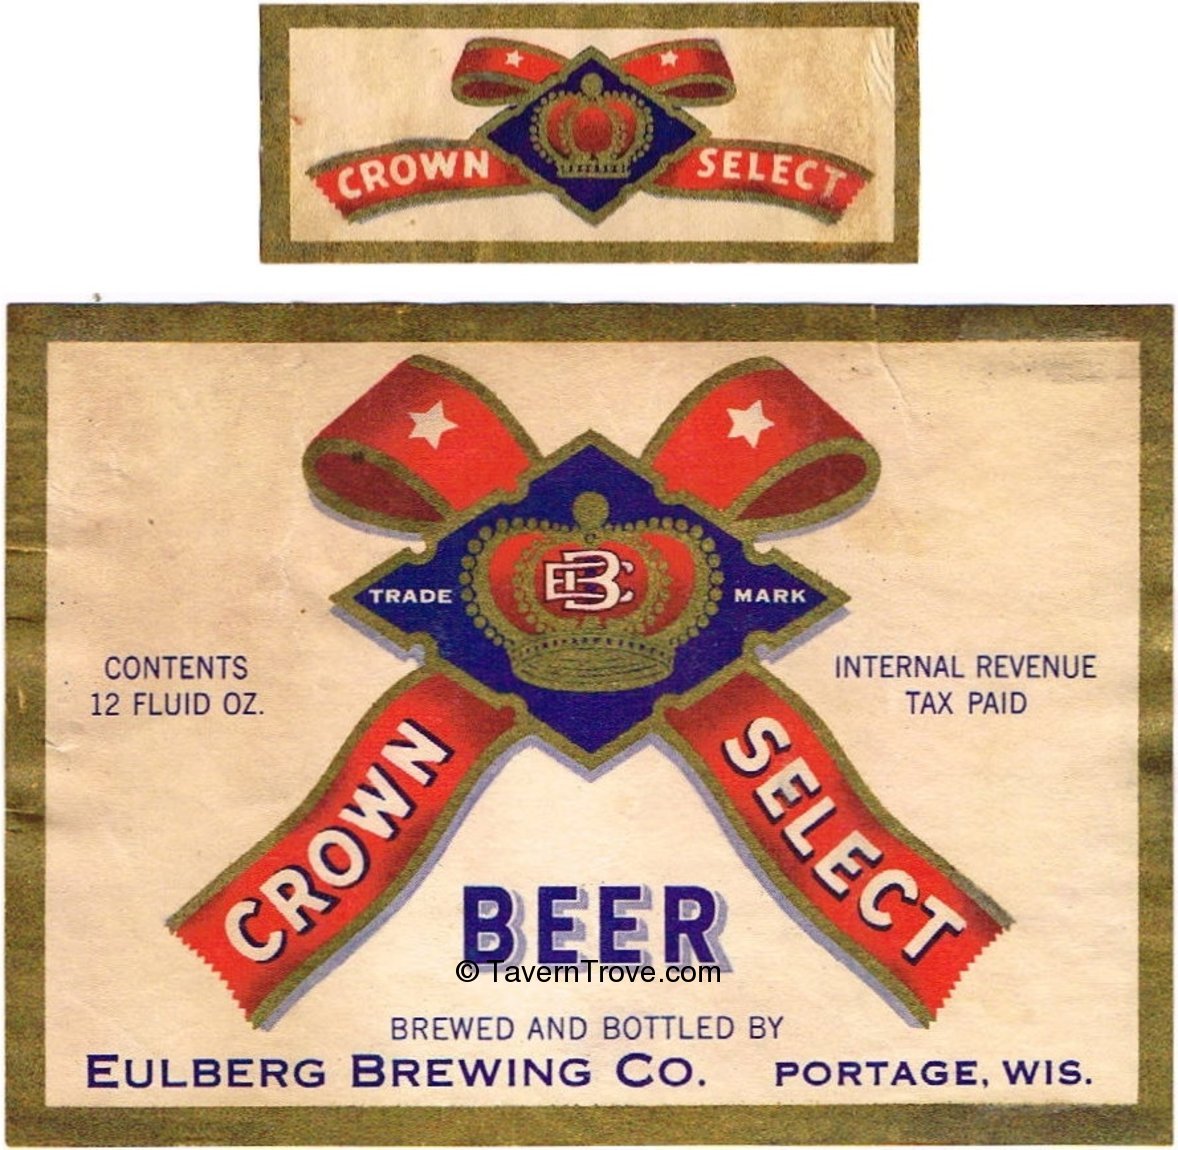 Item 60828 1945 Crown Select Beer Label WI